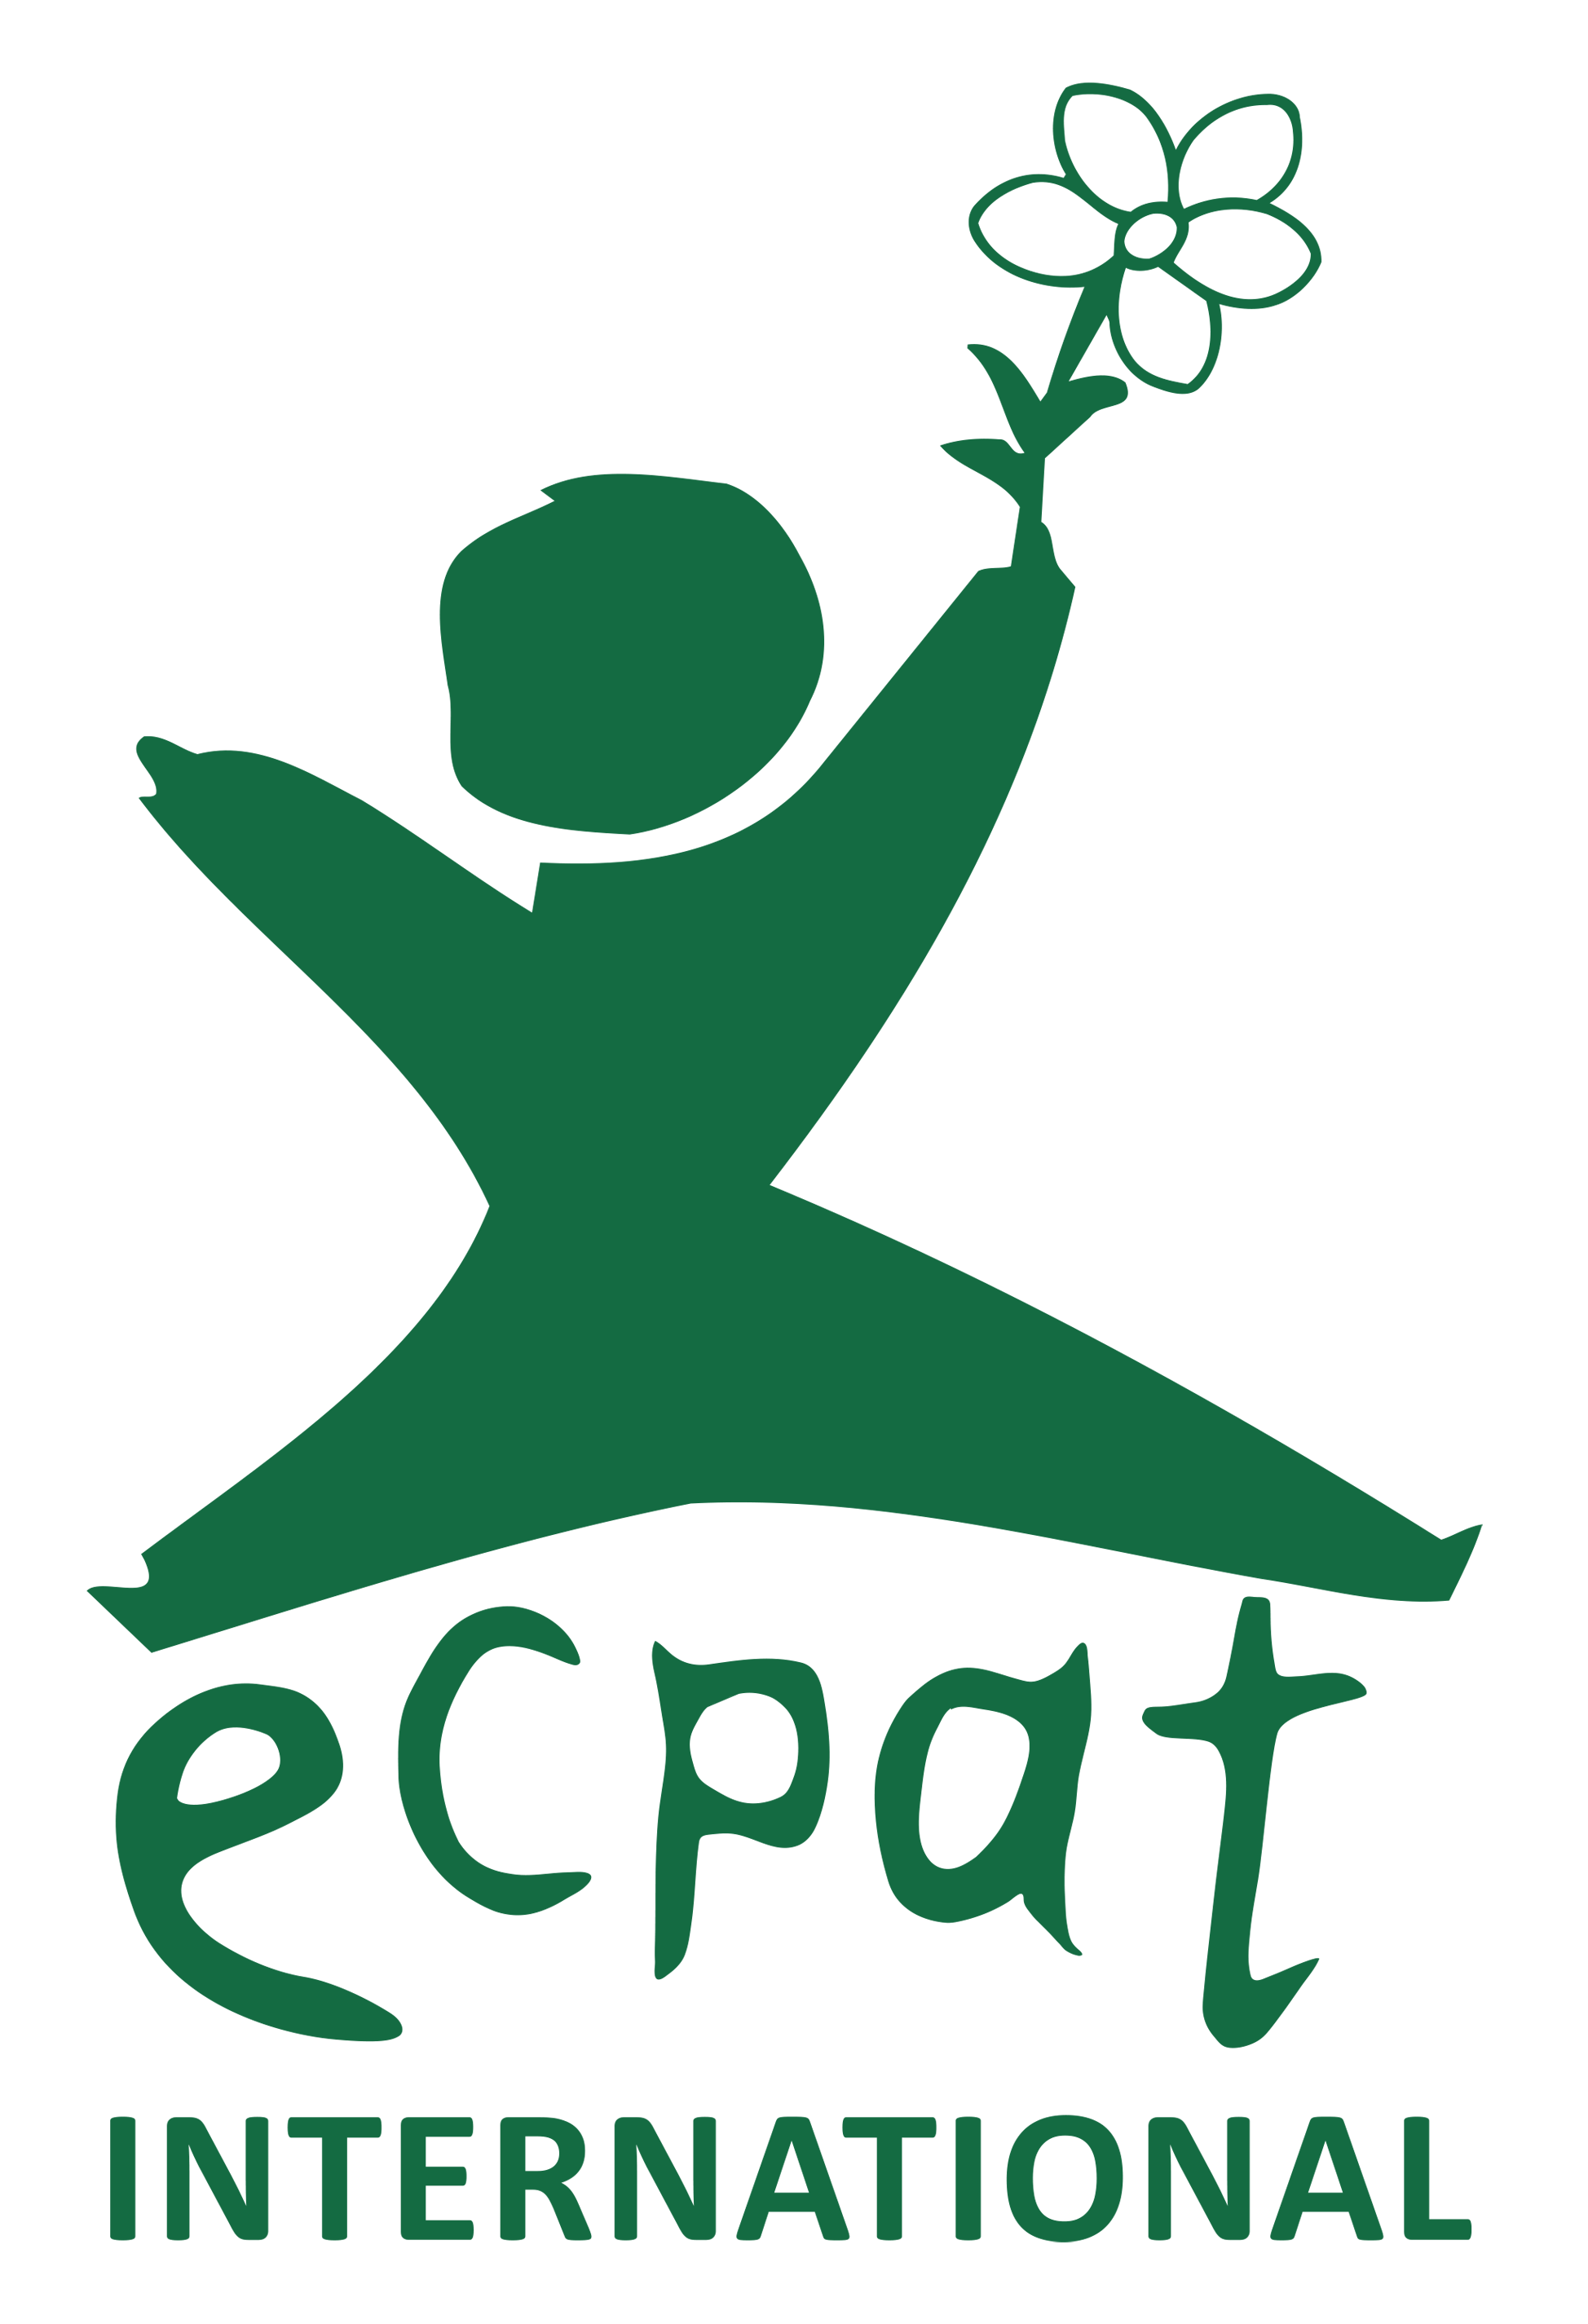 ECPAT Logo